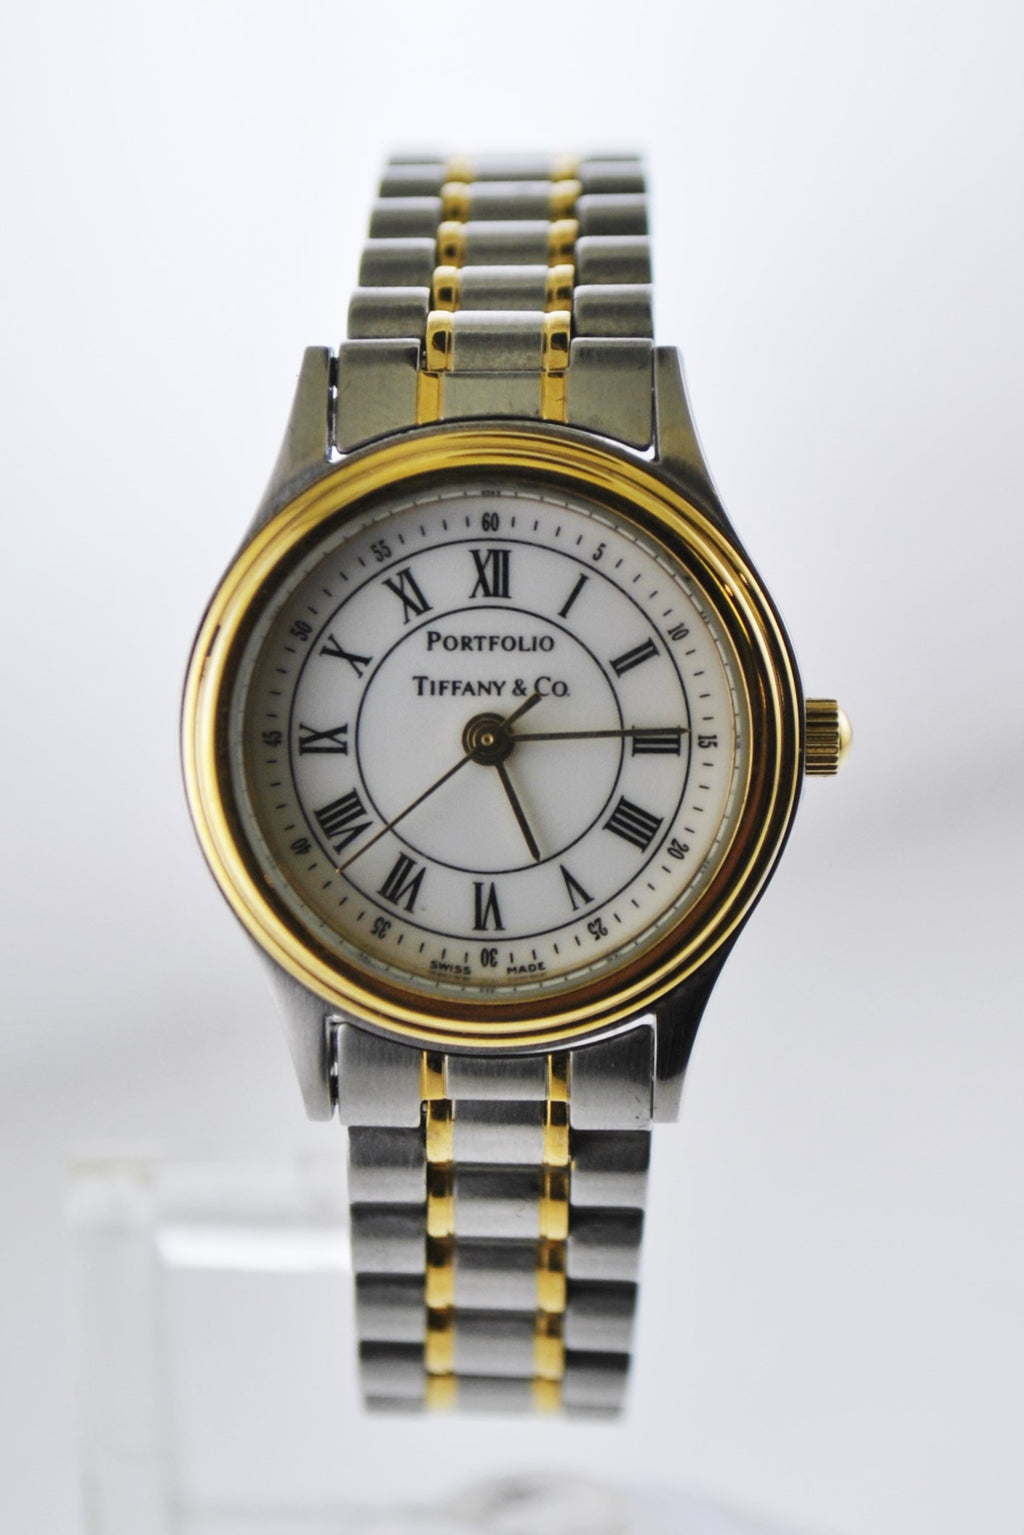 PORTFOLIO by TIFFANY & CO. Rare Two-tone YG & SS Wristwatch - $3K VALUE